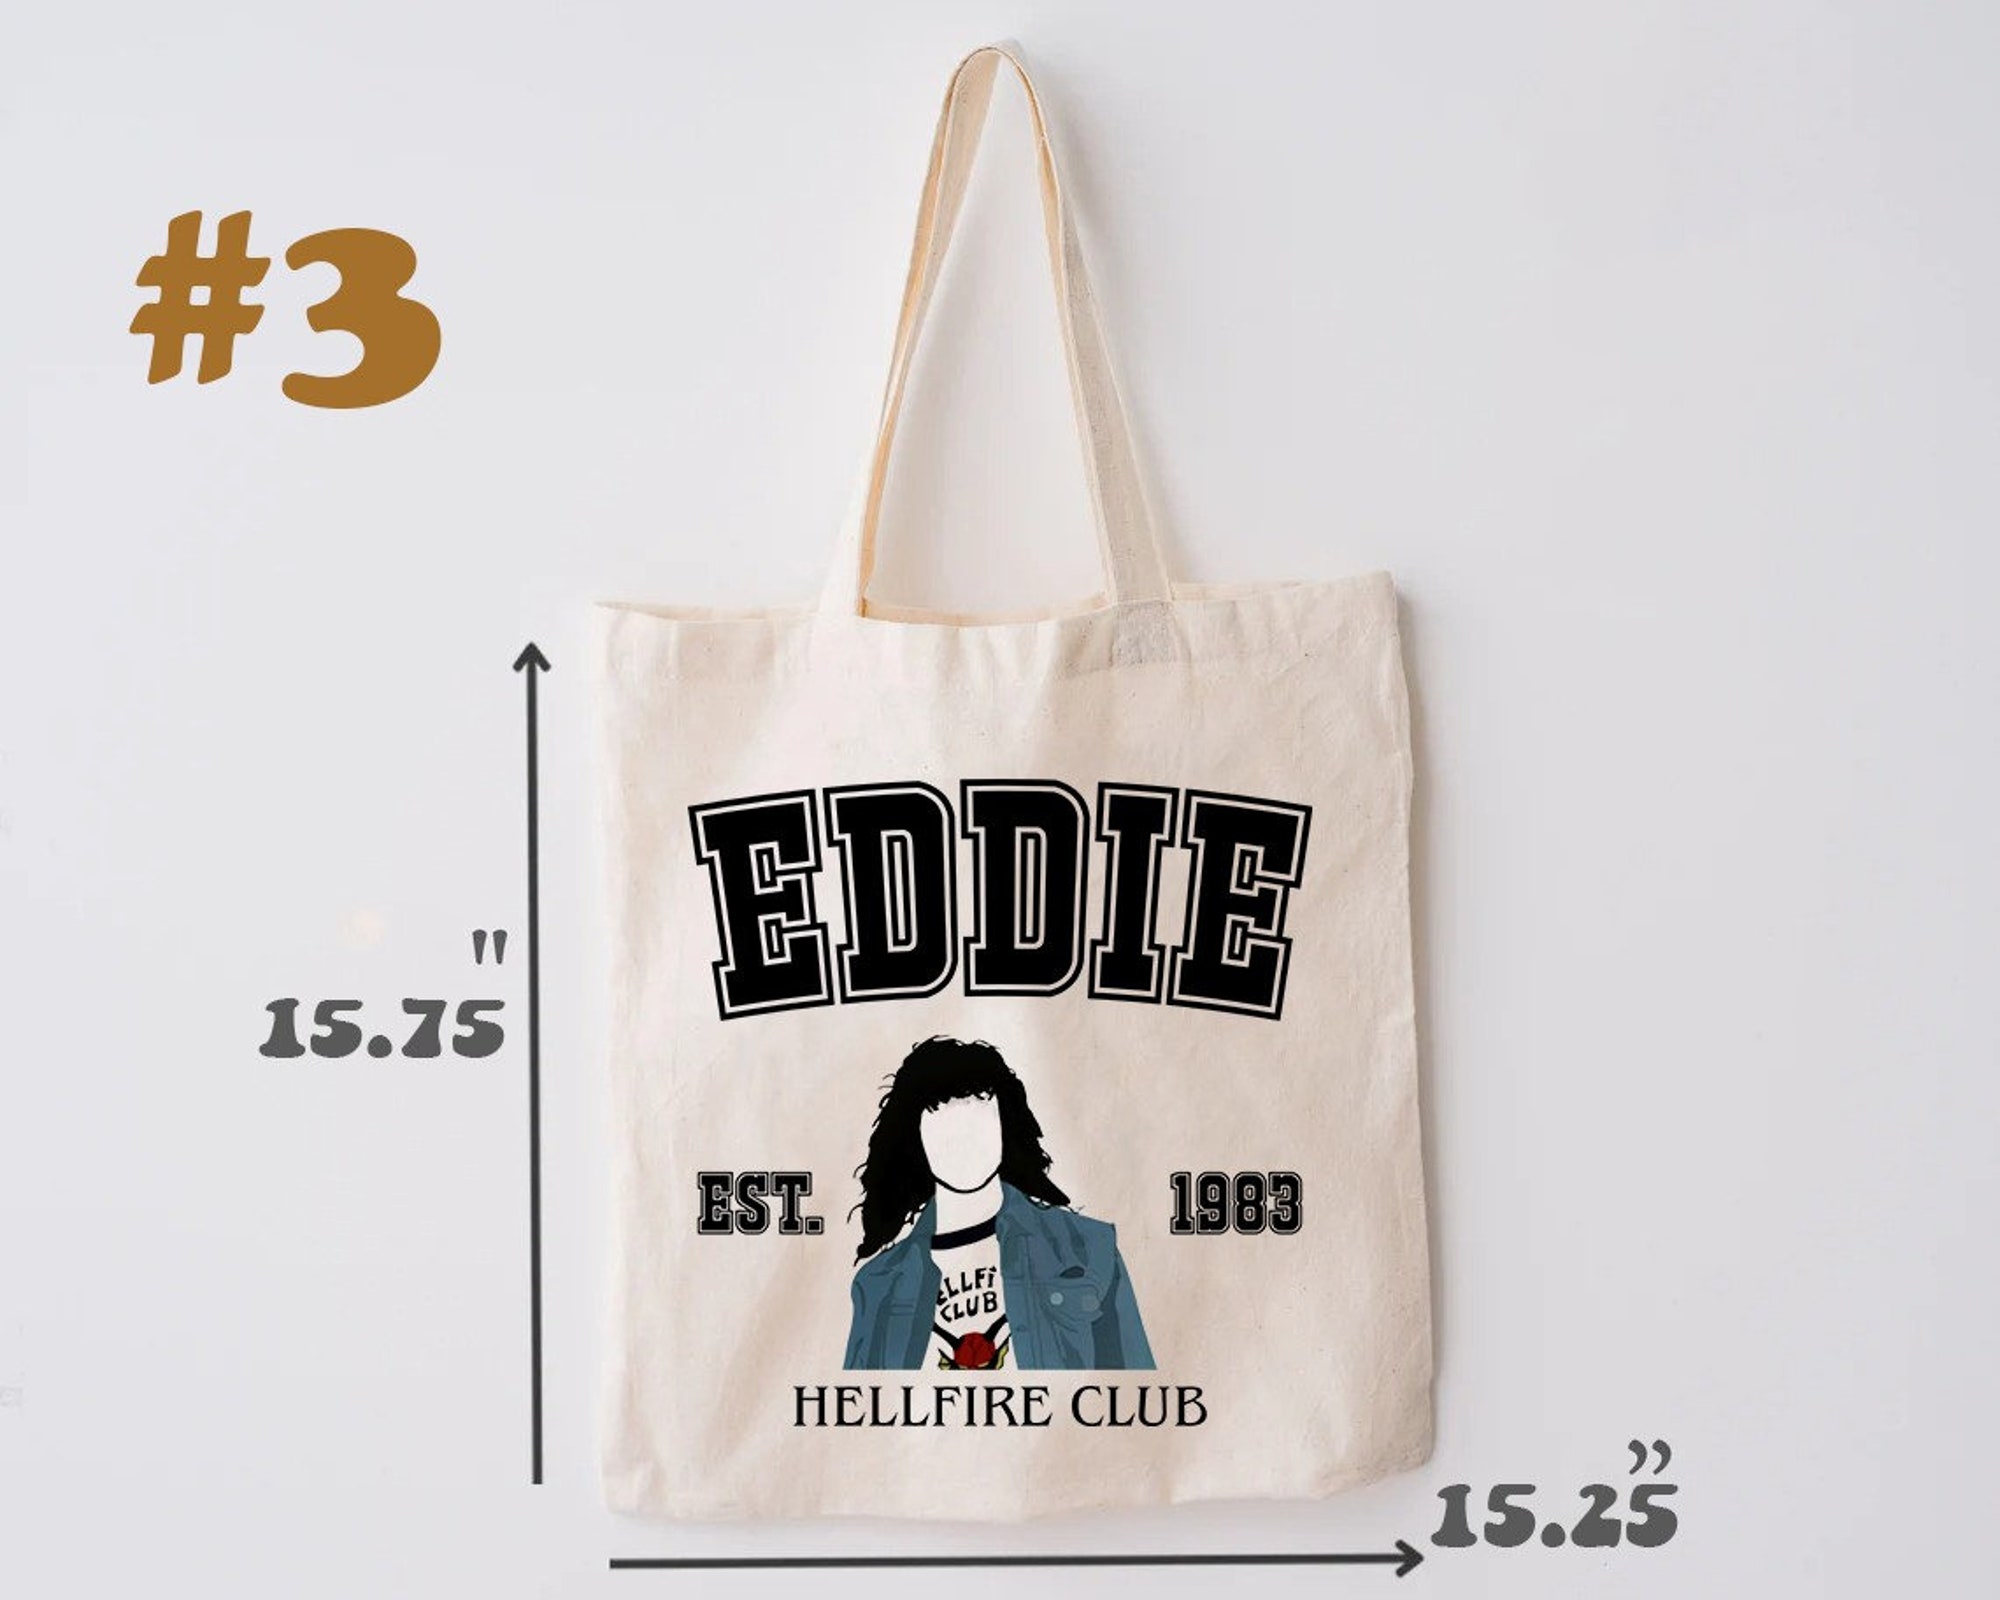 Discover Vintage Eddie Munson Tote Bag, Eddie Munson Bag, Eddie Munson Stranger Things 4